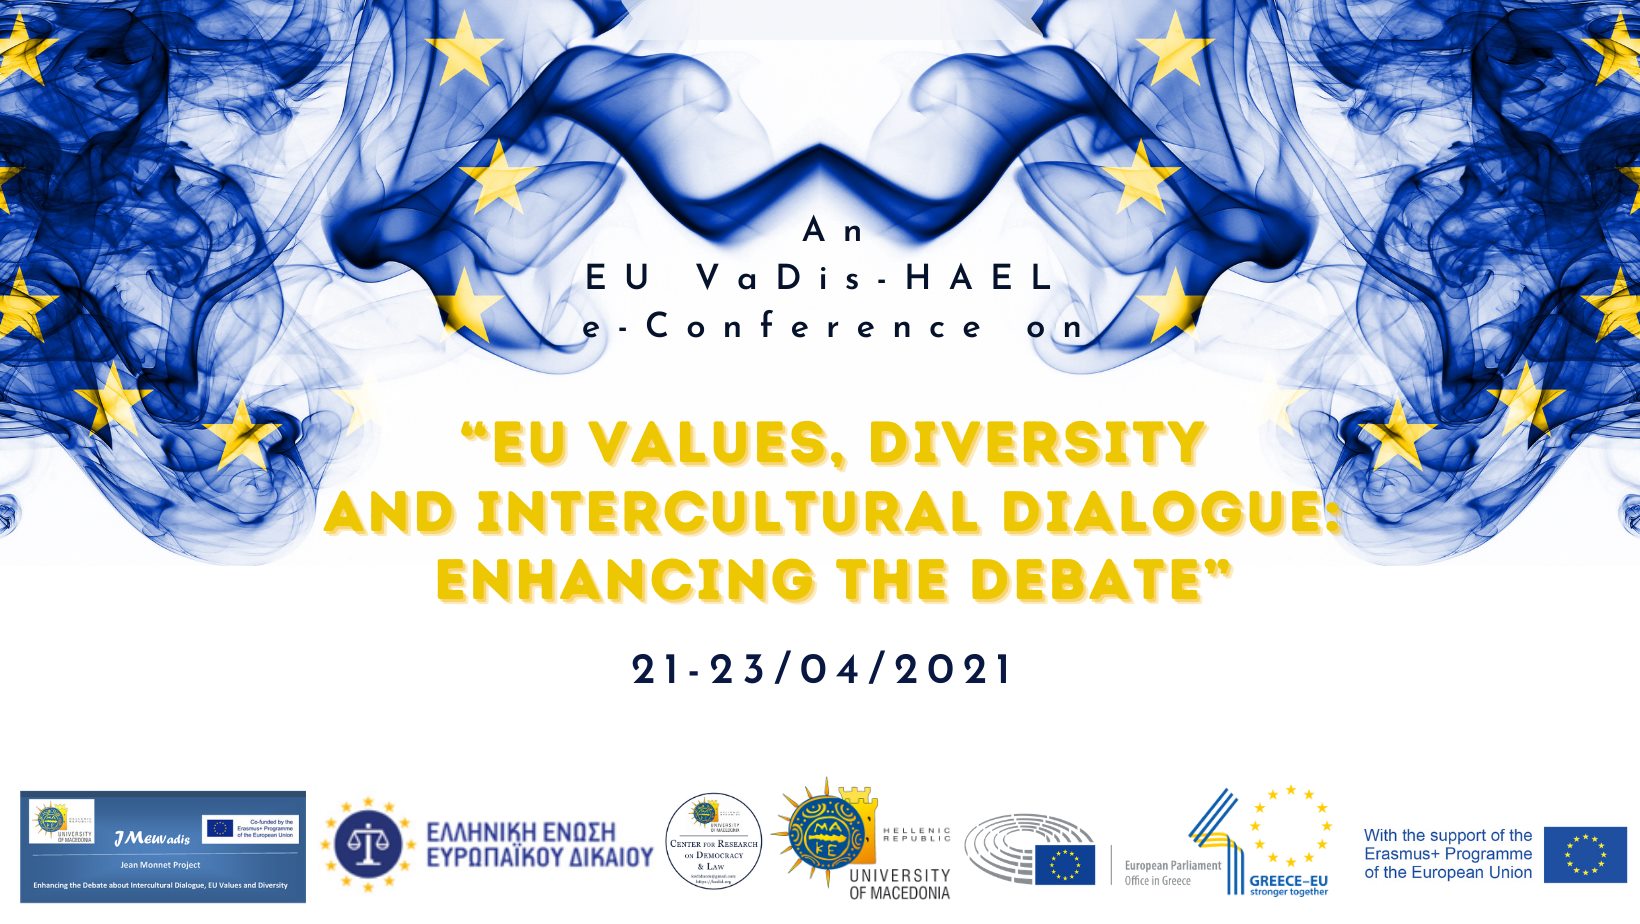 SOGI Unit at the EU Davis-Hael conference: EU Values, Diversity, and Intercultural Dialogue - Enhancing the Debate